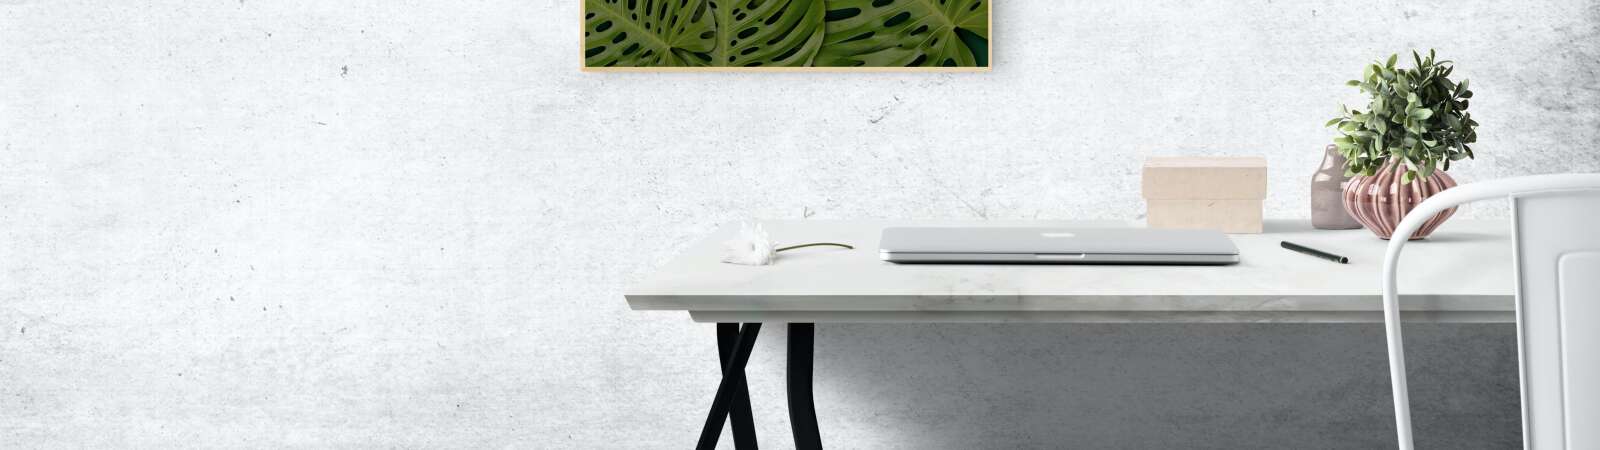 Rechteckiges Grünes Schweizer Käseblatt Pflanzenfoto An Der Wand Montiert